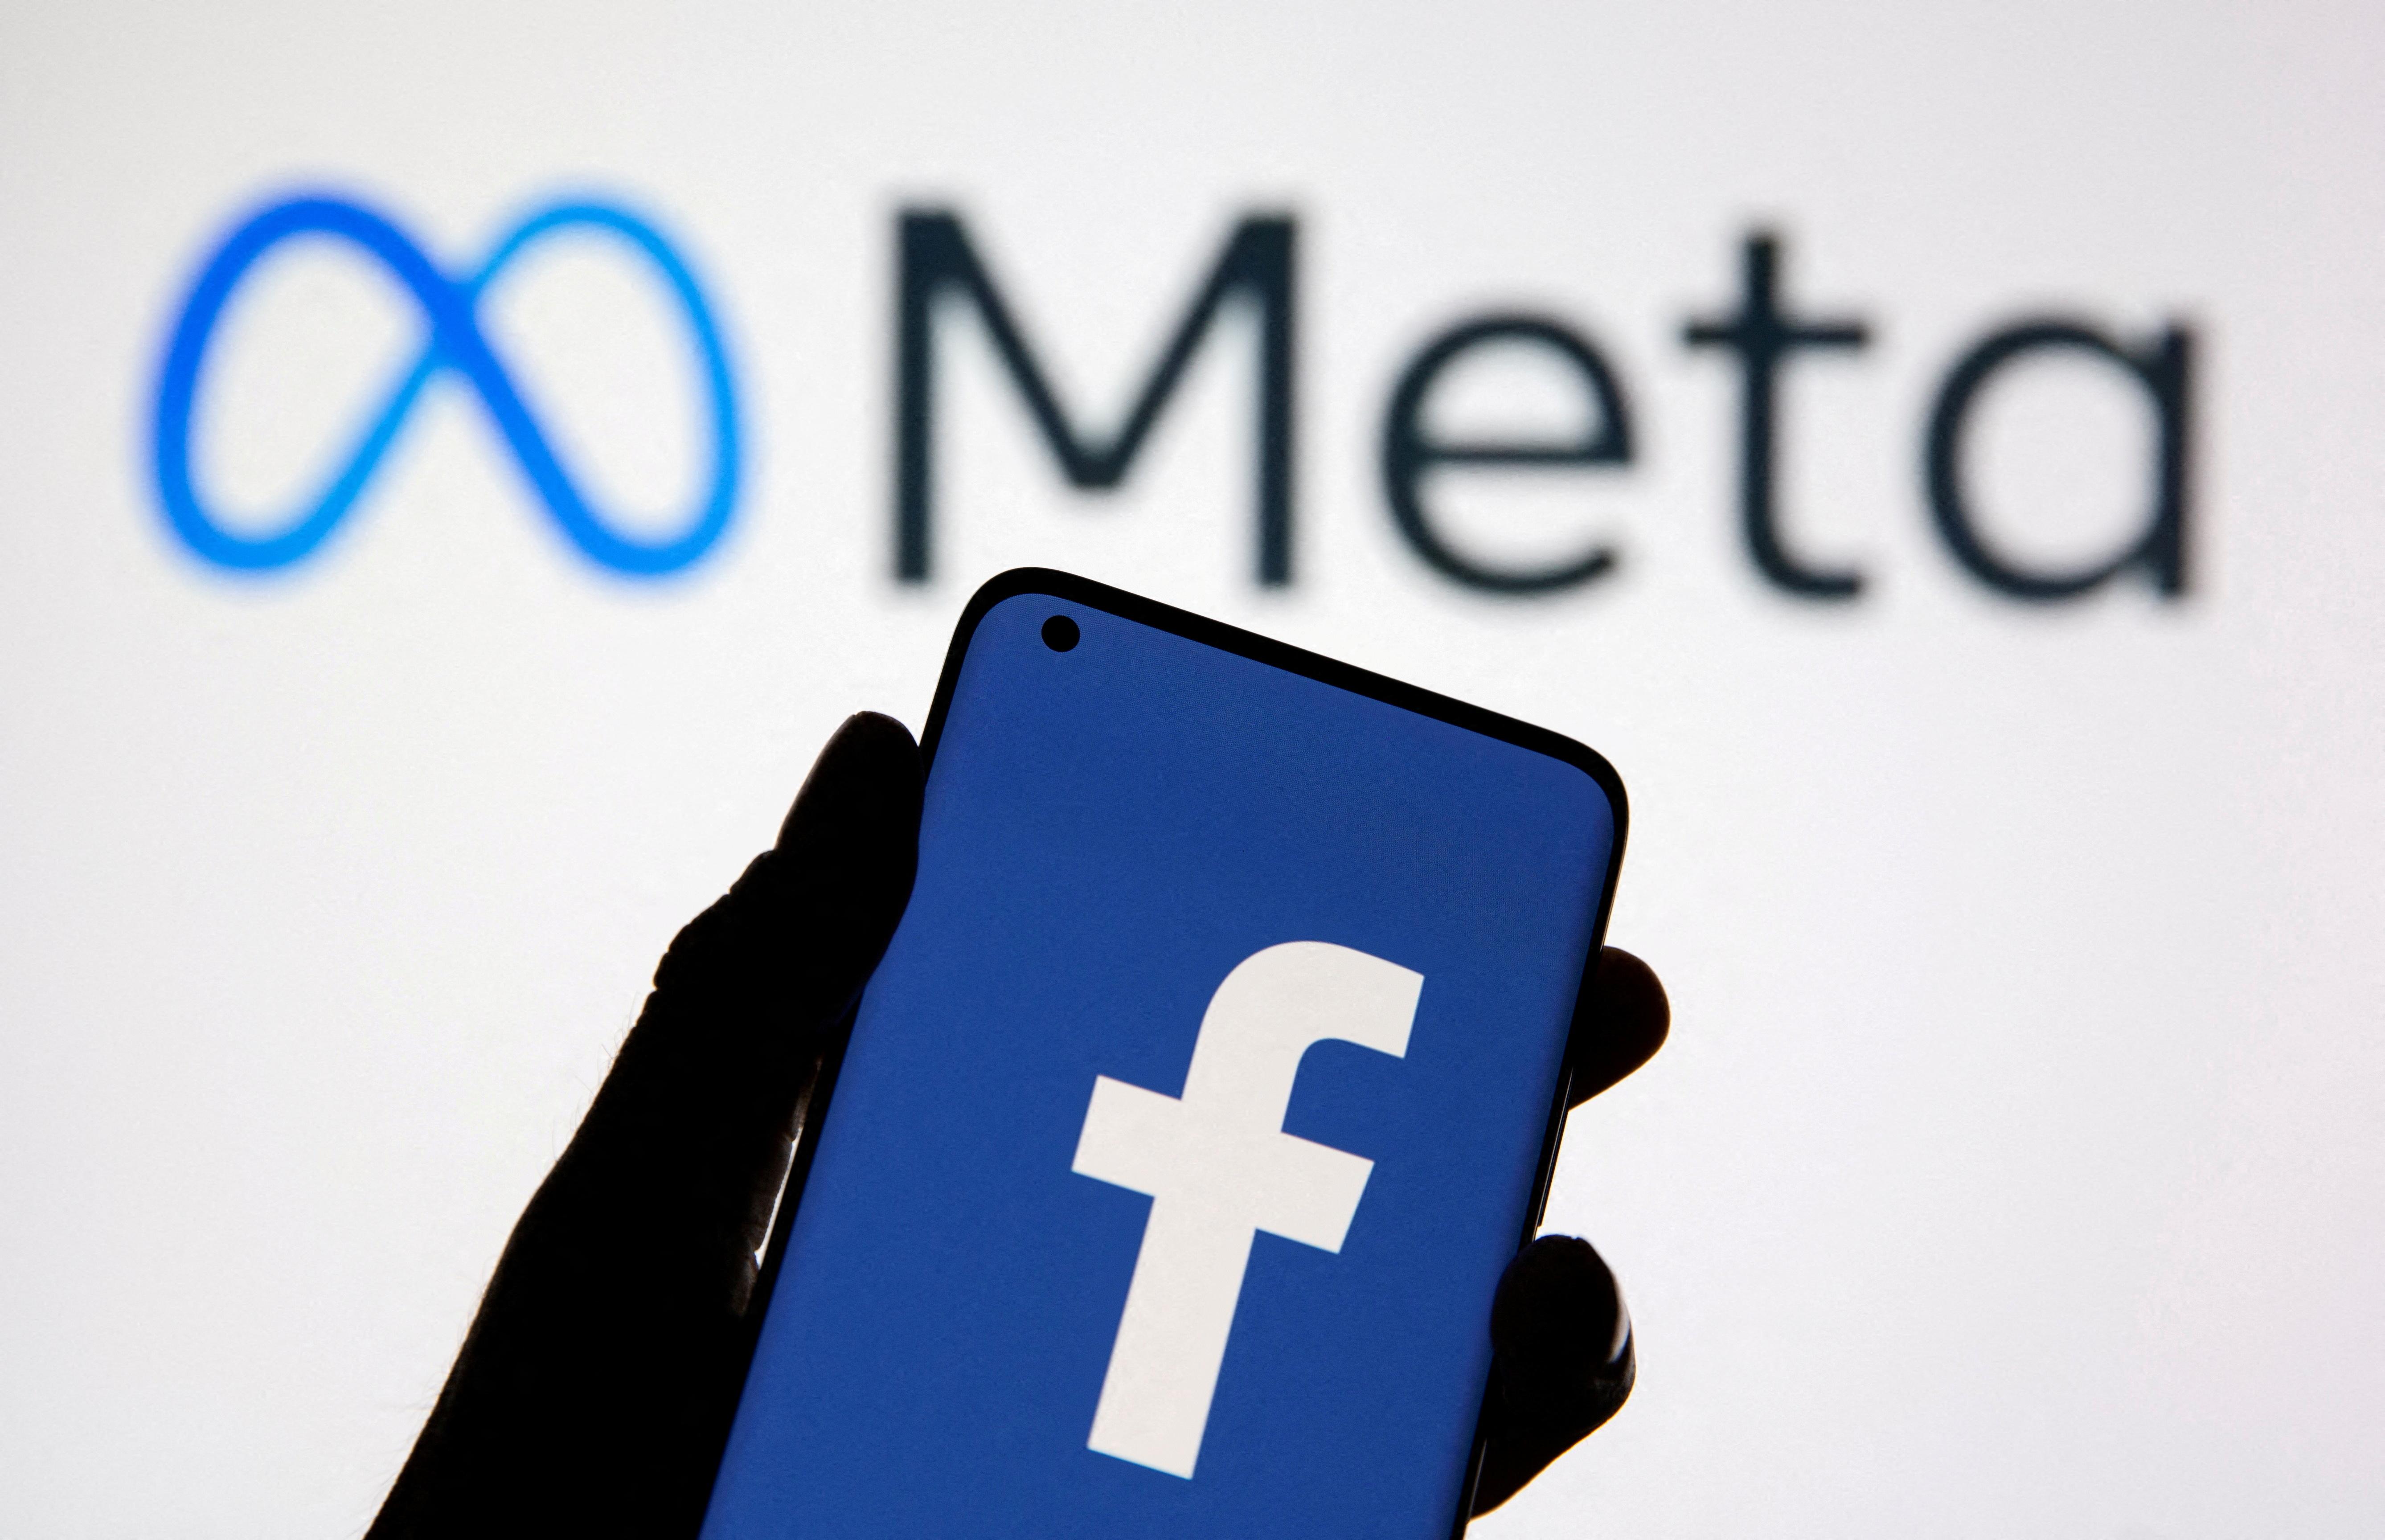 在此插图中，可以看到带有 Facebook 徽标的智能手机出现在 Facebook 的新品牌重塑徽标 Meta 前面